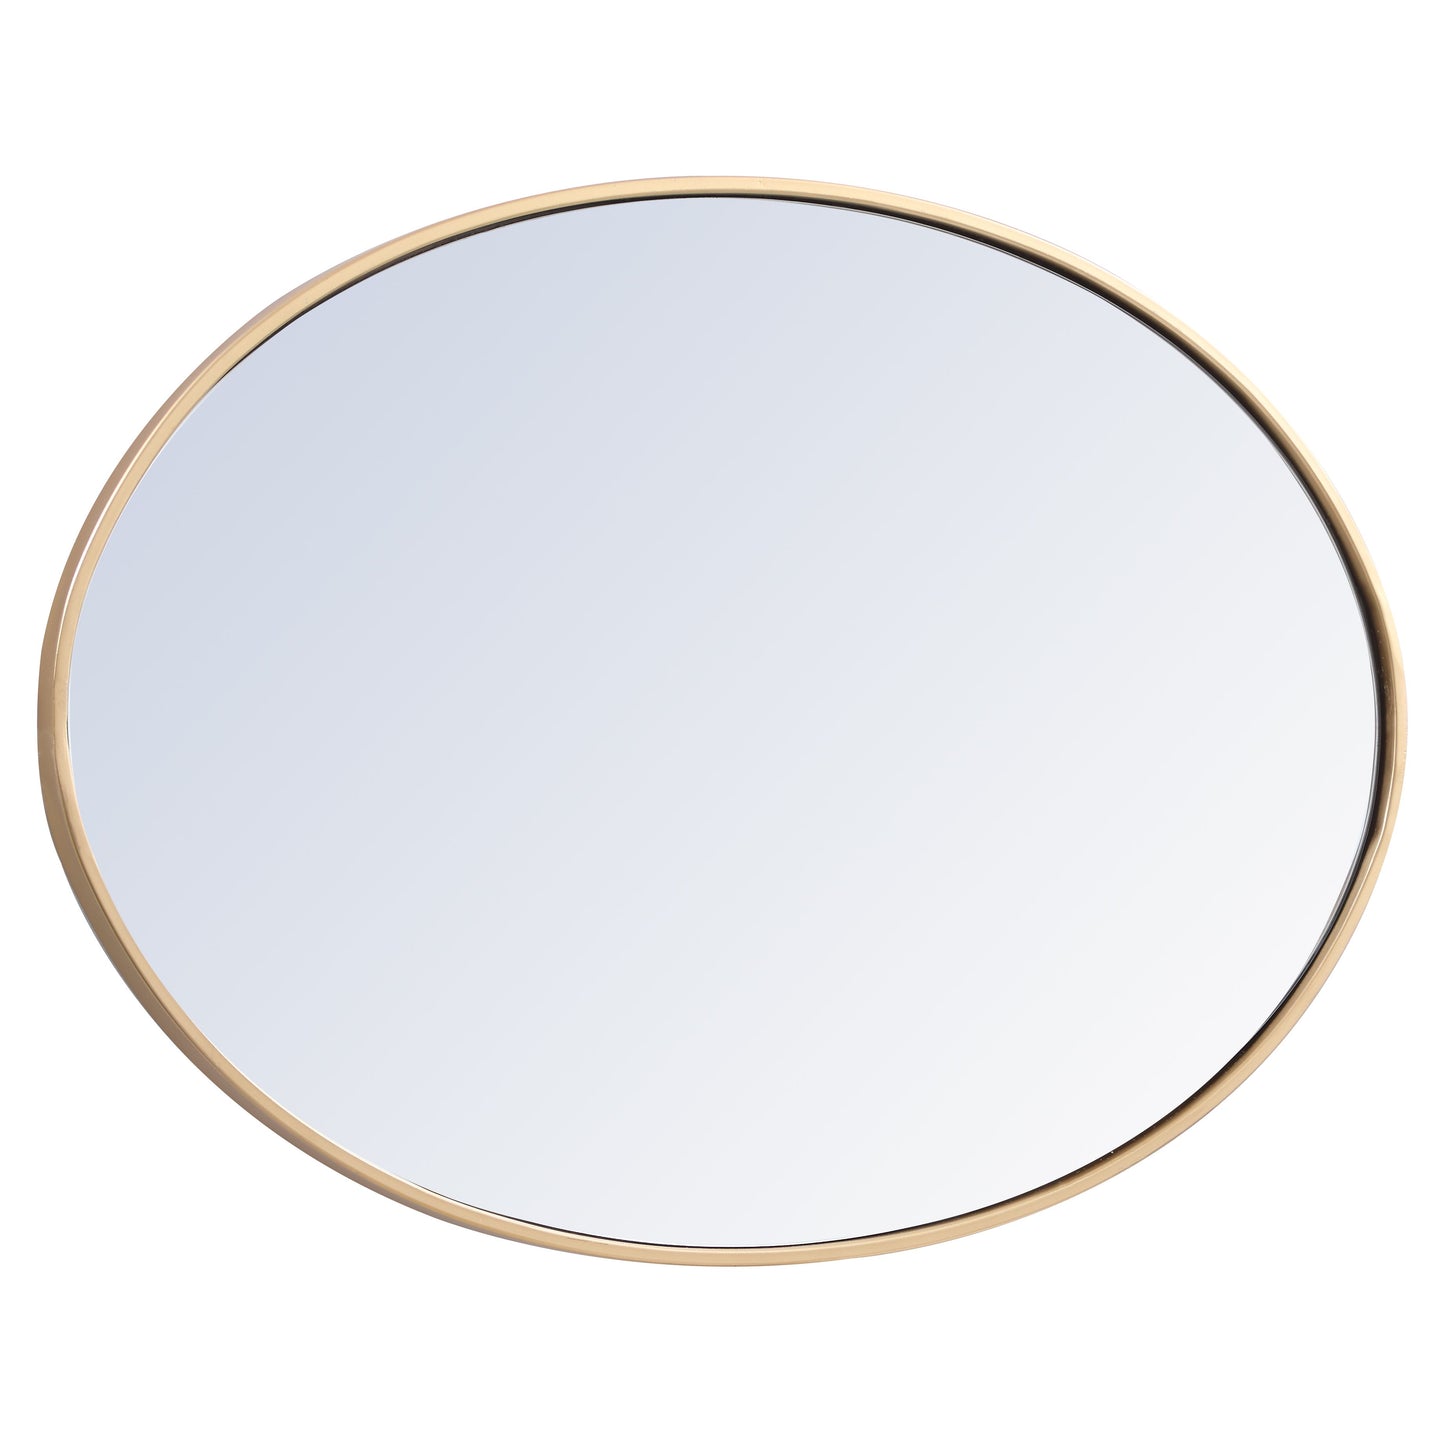 MR4624BR Decker 34" x 24" Metal Framed Oval Mirror in Brass